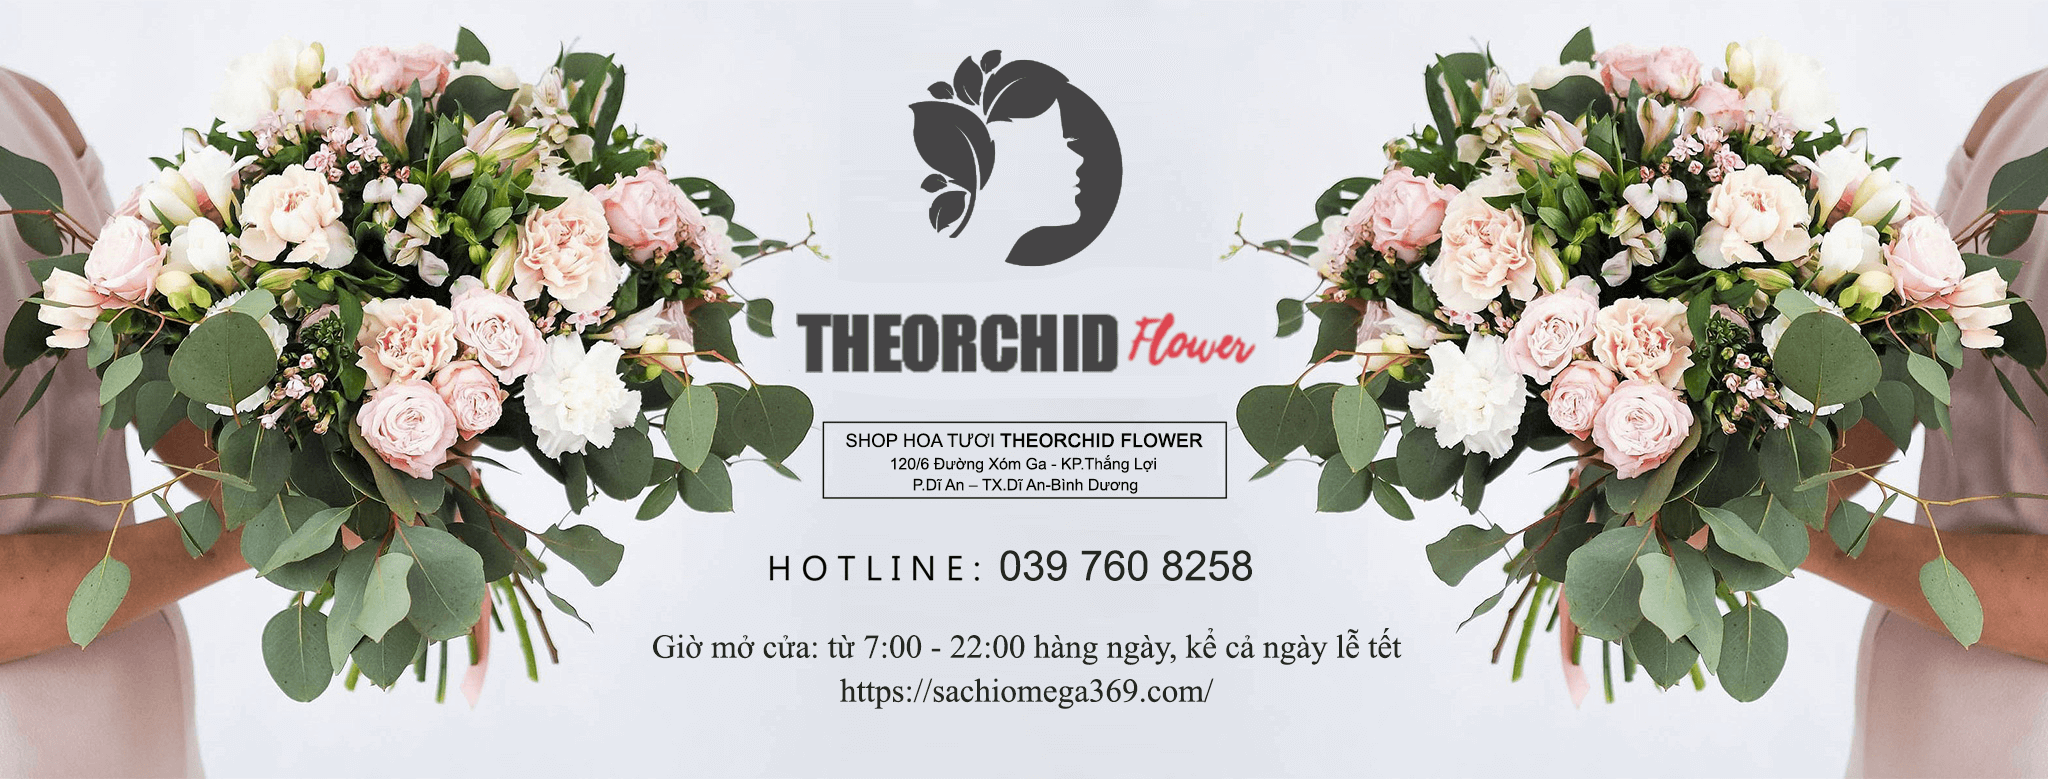 shop hoa tươi theorchid flower